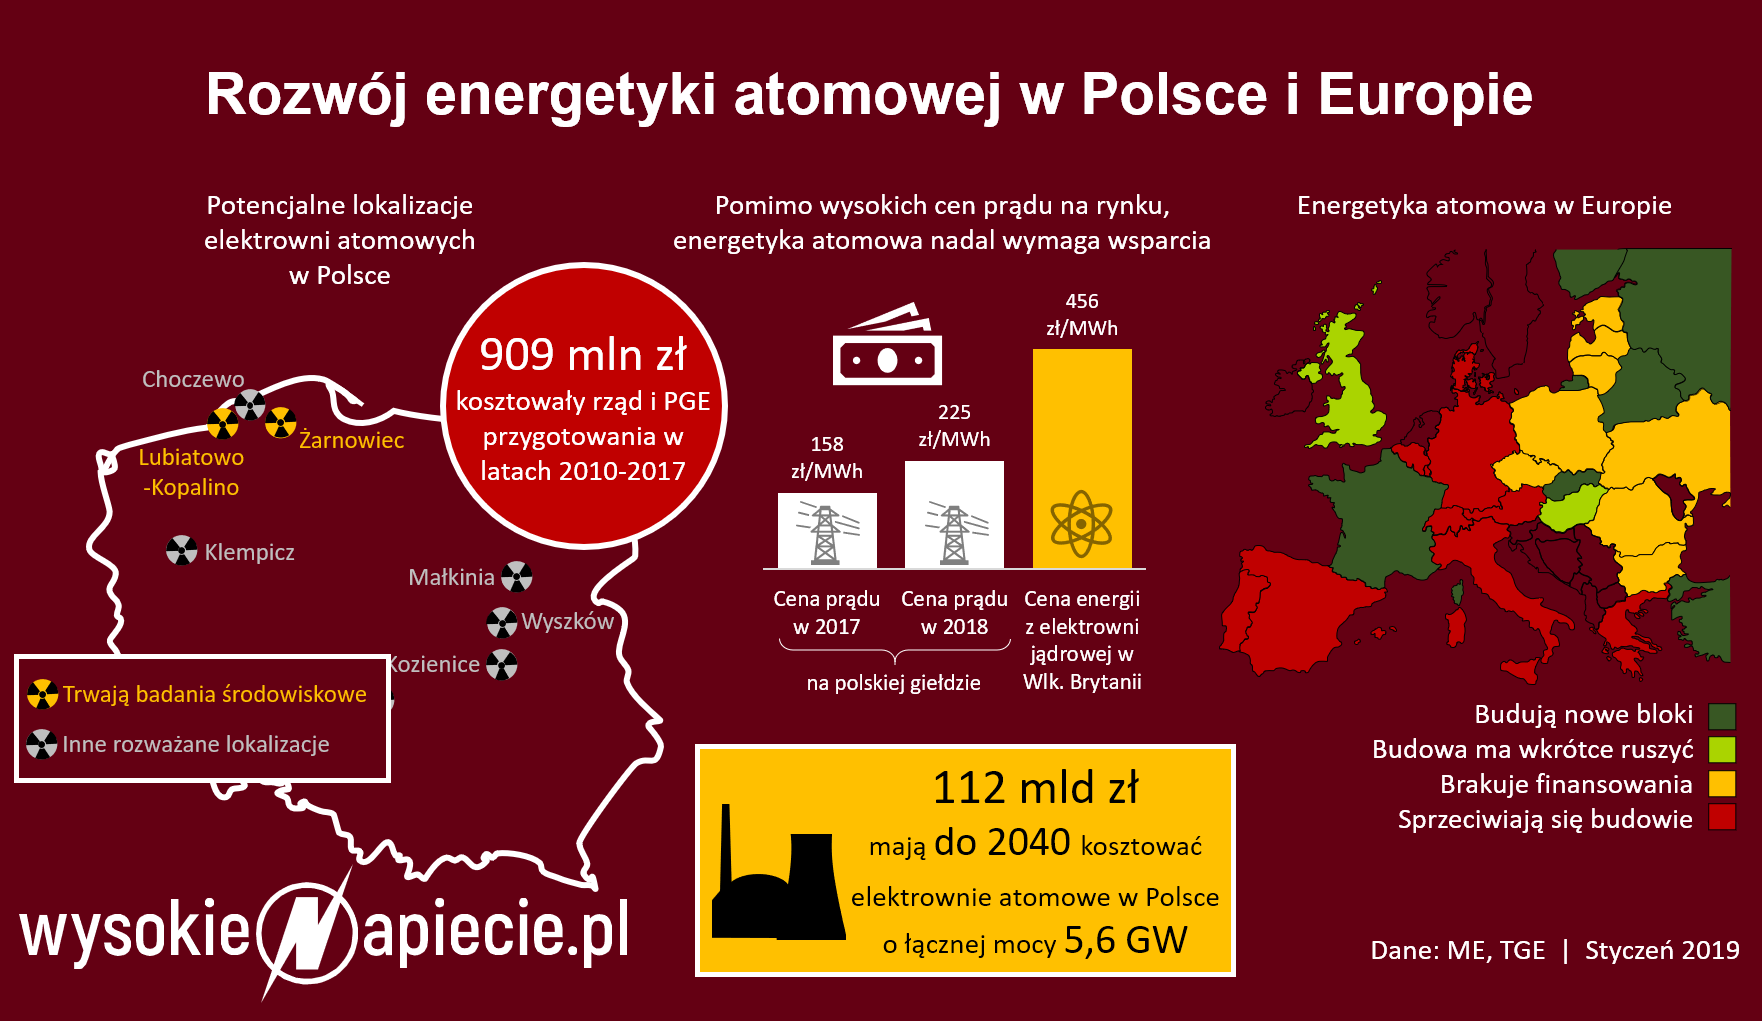 atom polska 2019 koszty cena europa